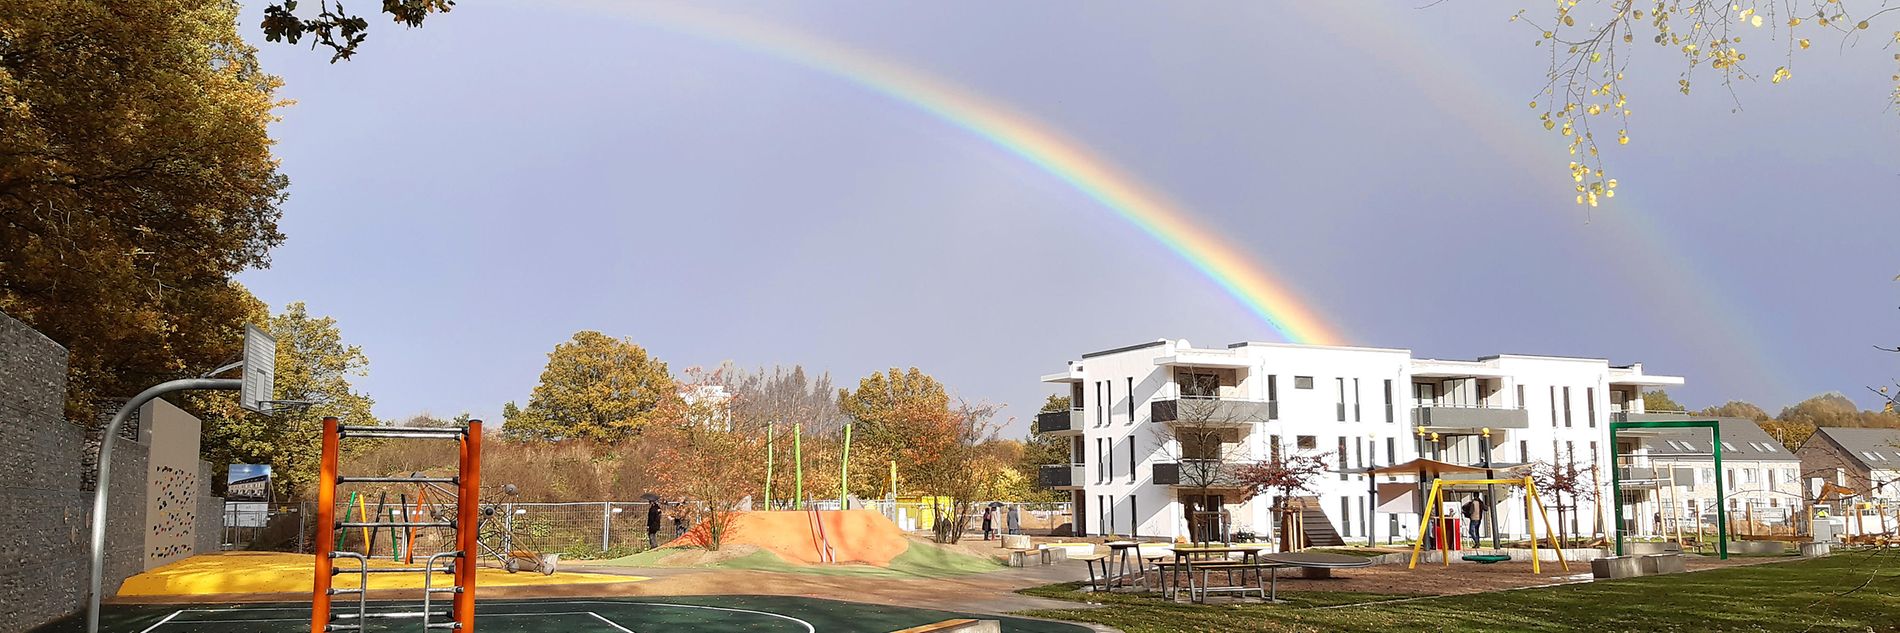 Über die Grüne Mitte des neuen Quartiers Haferblöcken spannt sich ein Regenbogen 